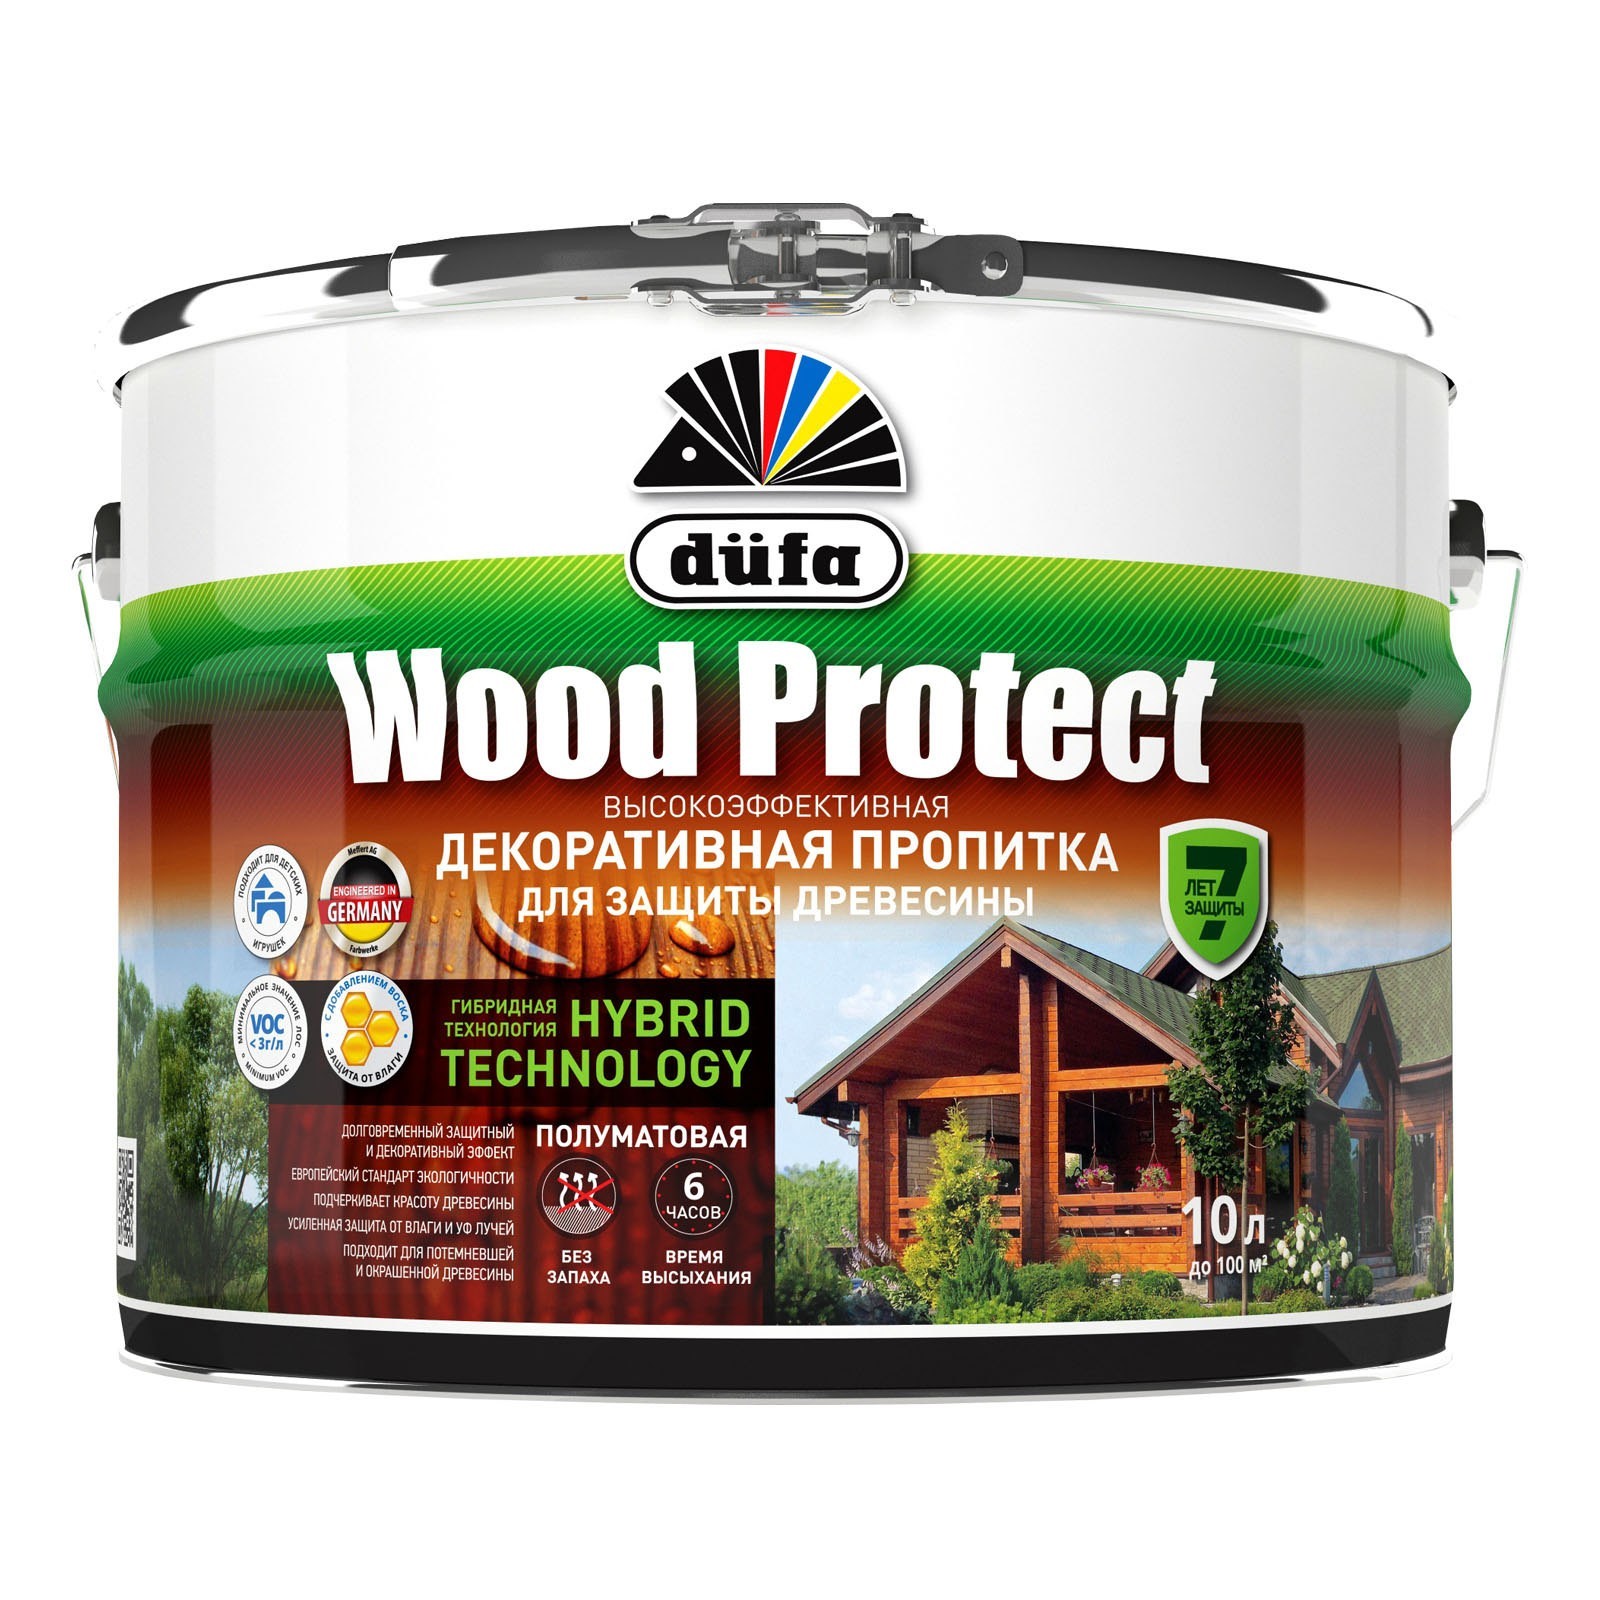 Пропитка декоративная для защиты древесины Белая 10 л Dufa Wood Protect - фото - 1